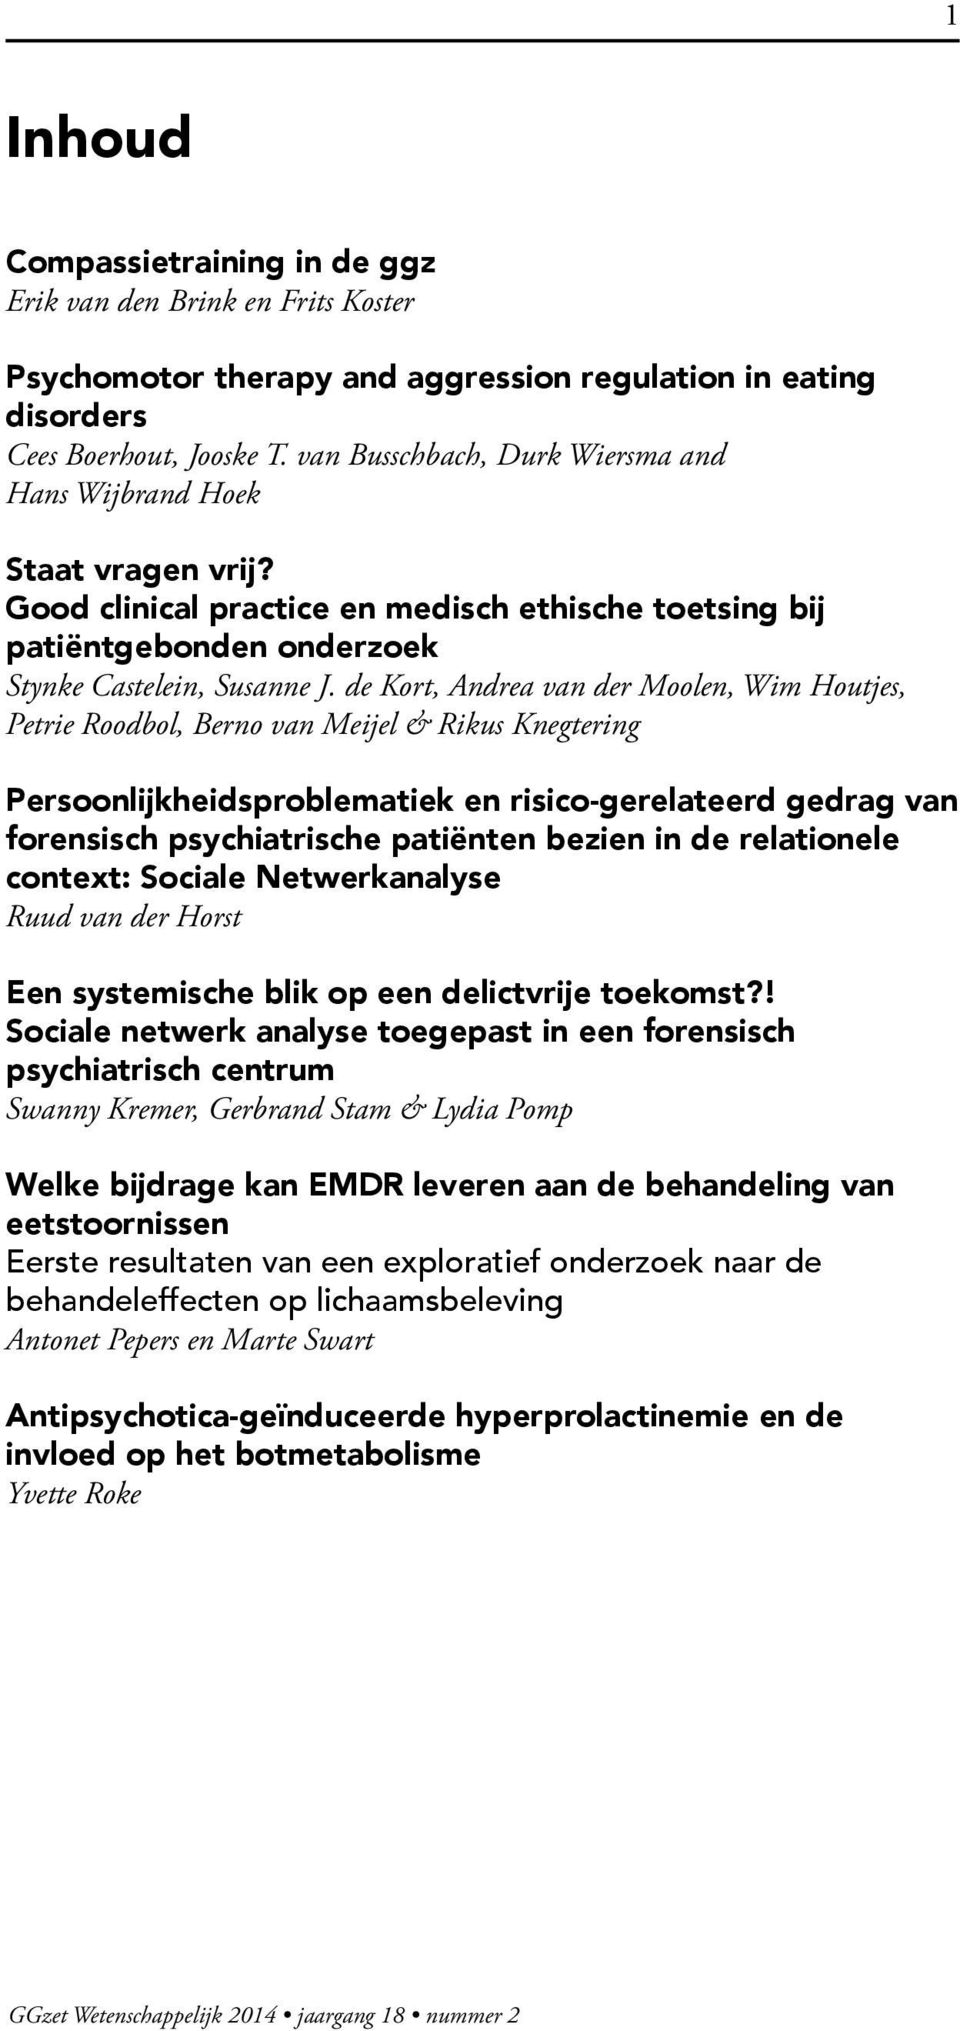 de Kort, Andrea van der Moolen, Wim Houtjes, Petrie Roodbol, Berno van Meijel & Rikus Knegtering Persoonlijkheidsproblematiek en risico-gerelateerd gedrag van forensisch psychiatrische patiënten